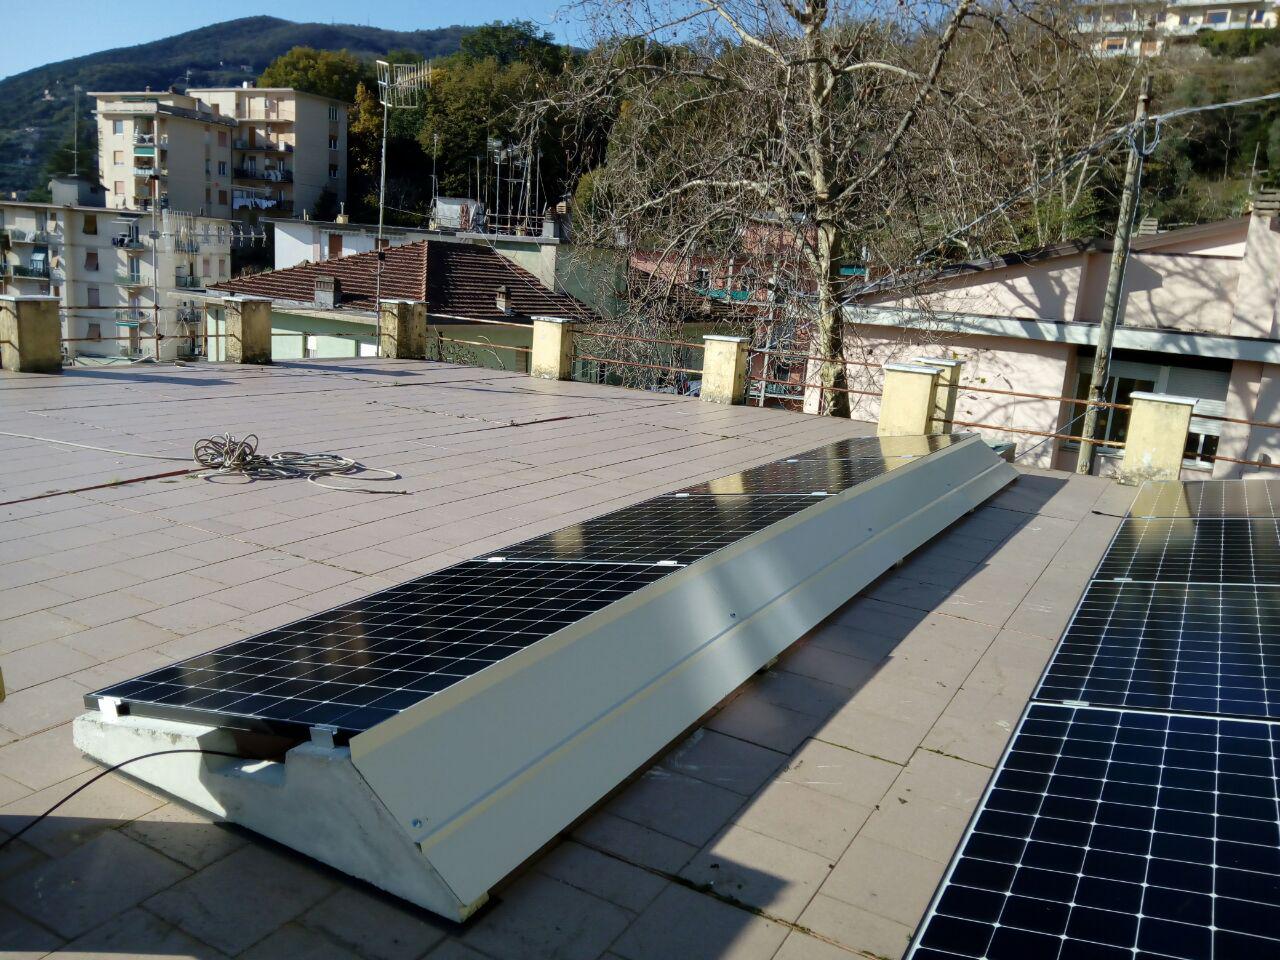 Impianto fotovoltaico 3,2 kW con pannelli solari Sunpower installato su tetto piano con zavorre antivento